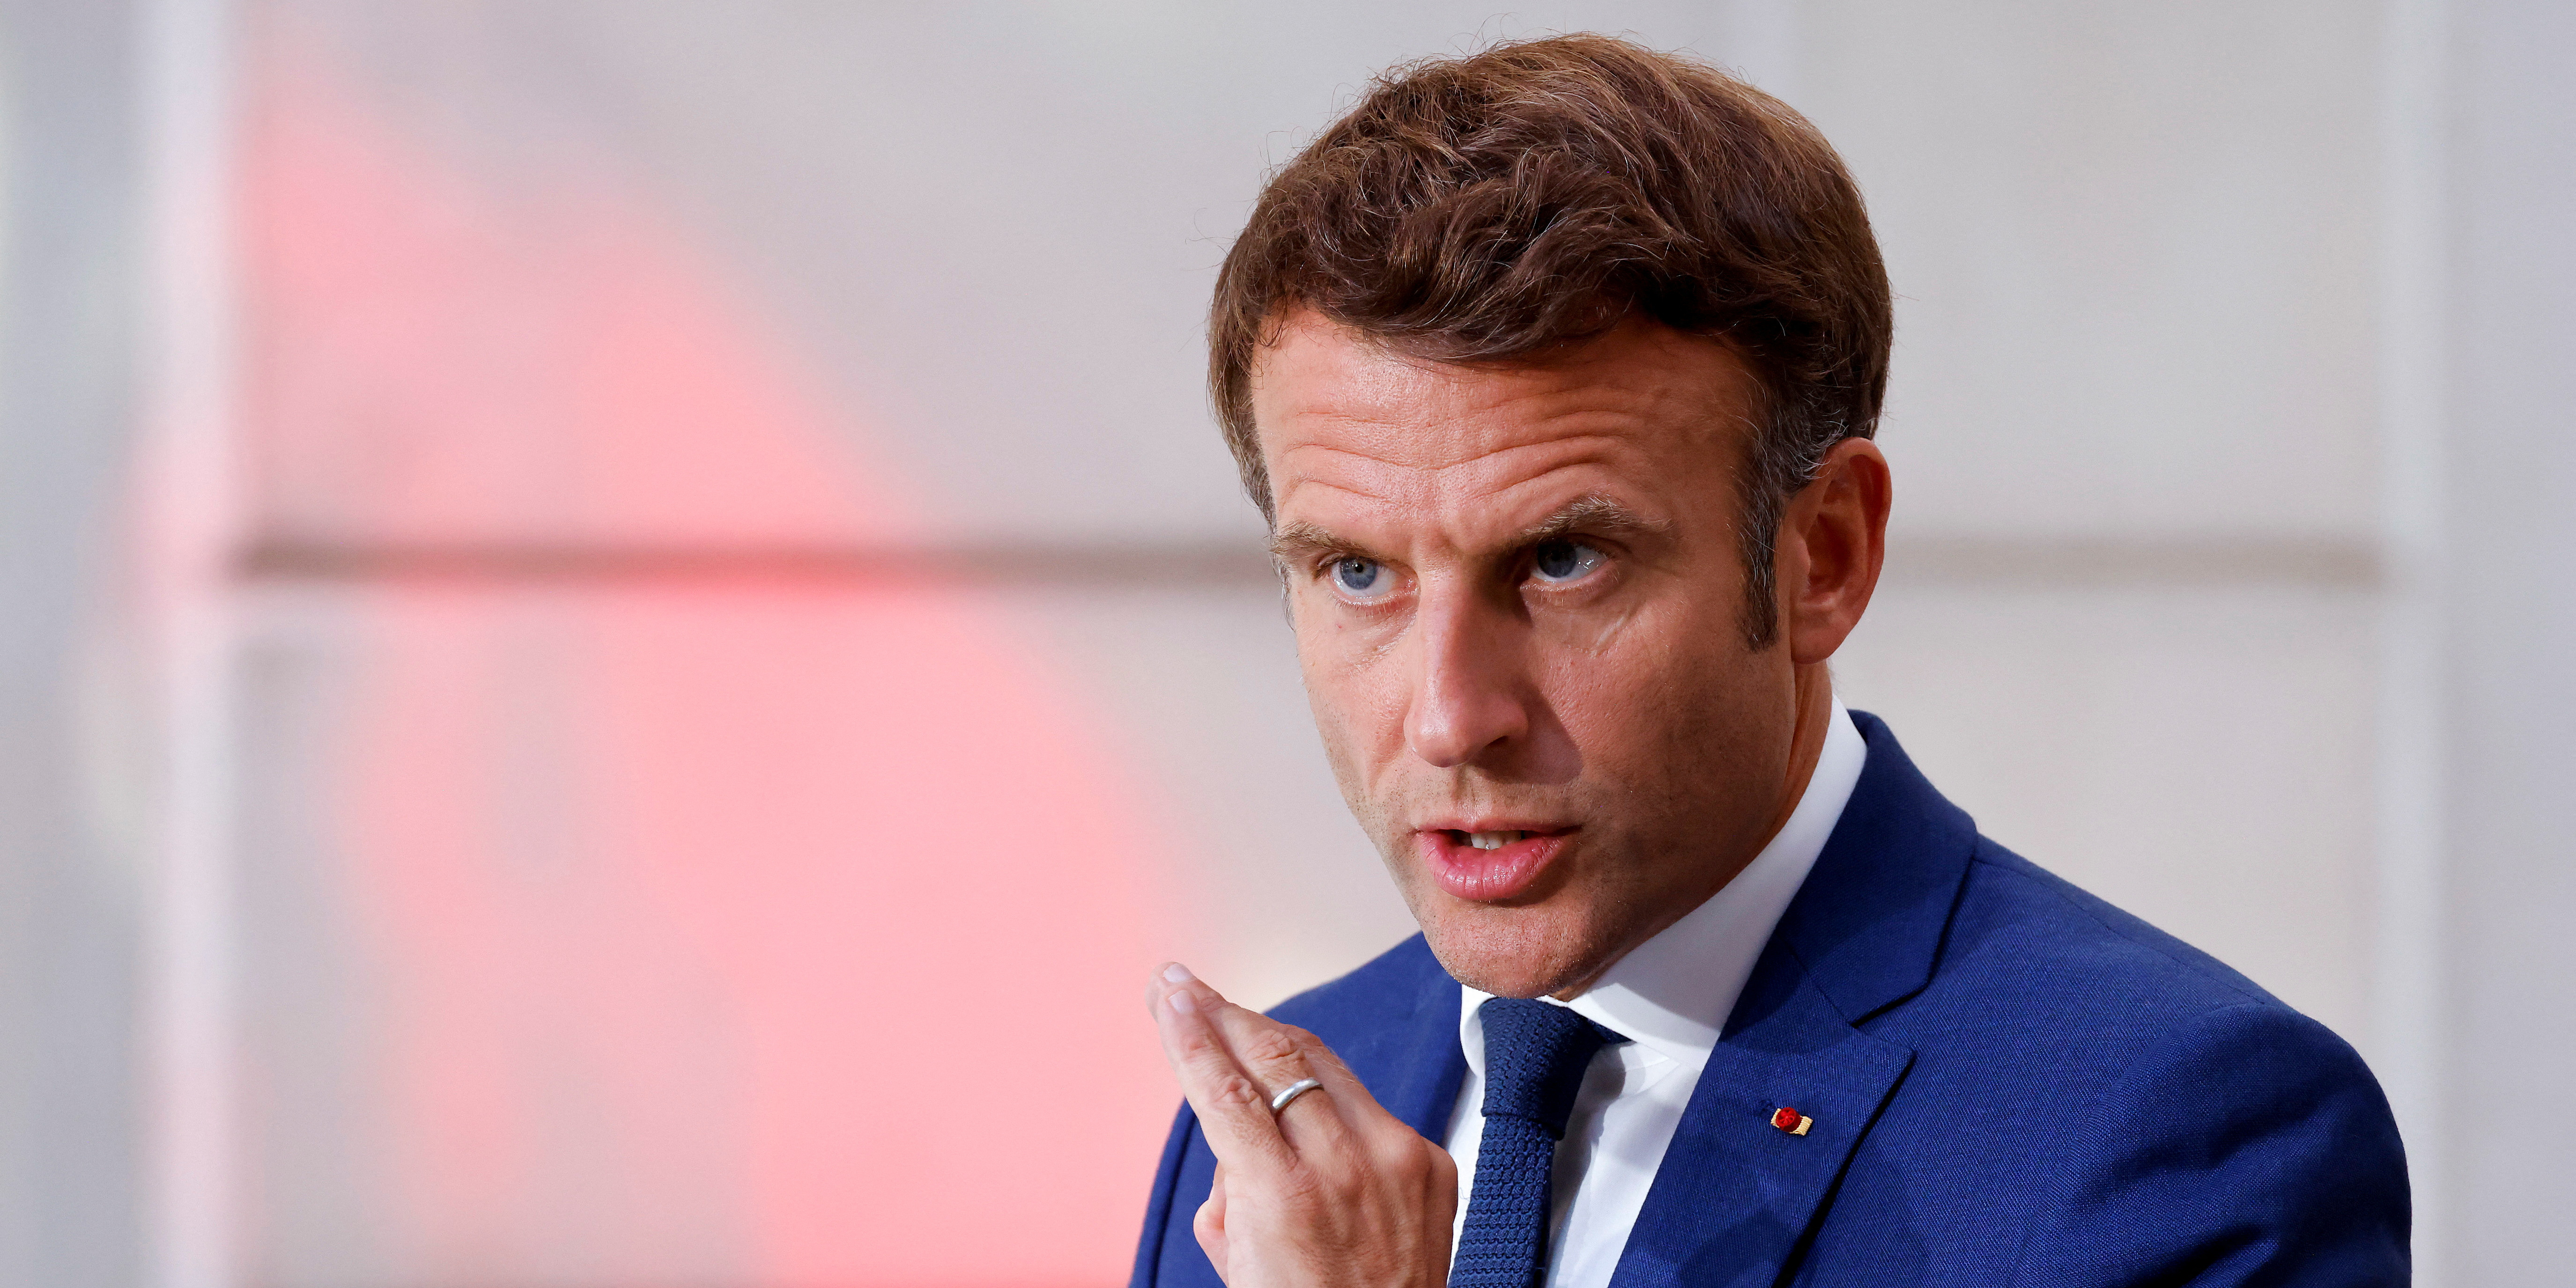 CNR : Macron annonce une consultation en ligne pour les Français, et pourquoi pas des référendums